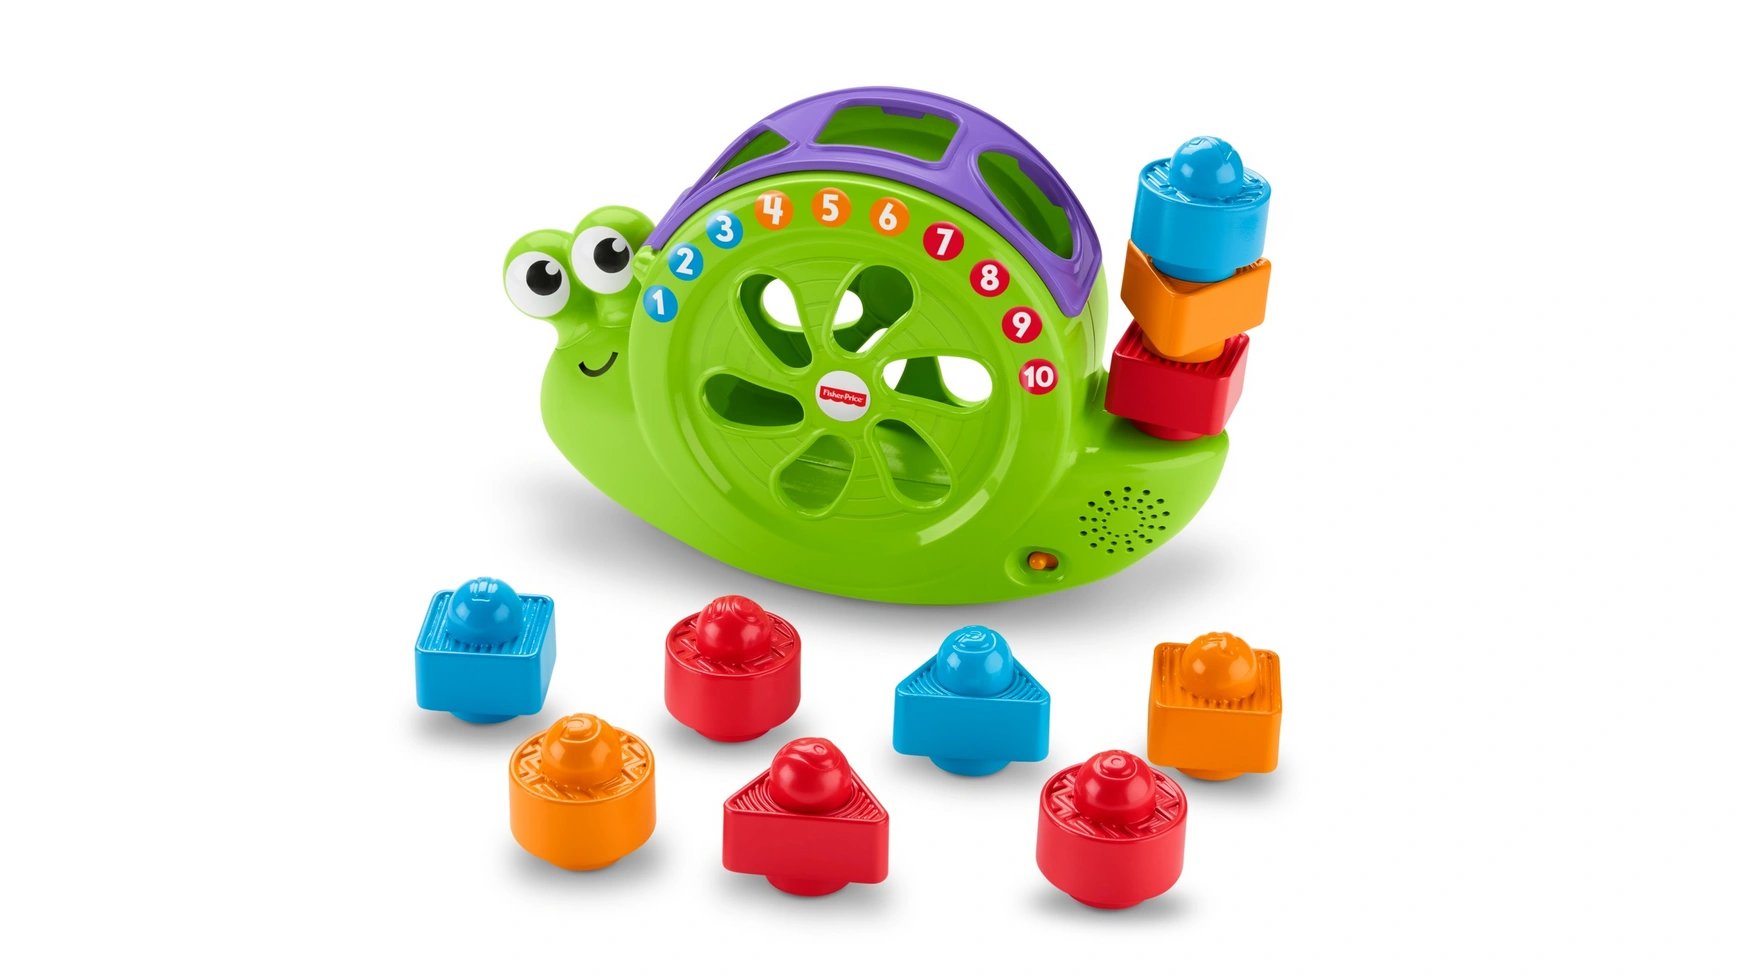 Музыкальная улитка Fisher Price Babies, подключаемая игрушка, складывающаяся игра, развивающая игрушка умка обучающая улитка лунтик с волшебным зеркалом